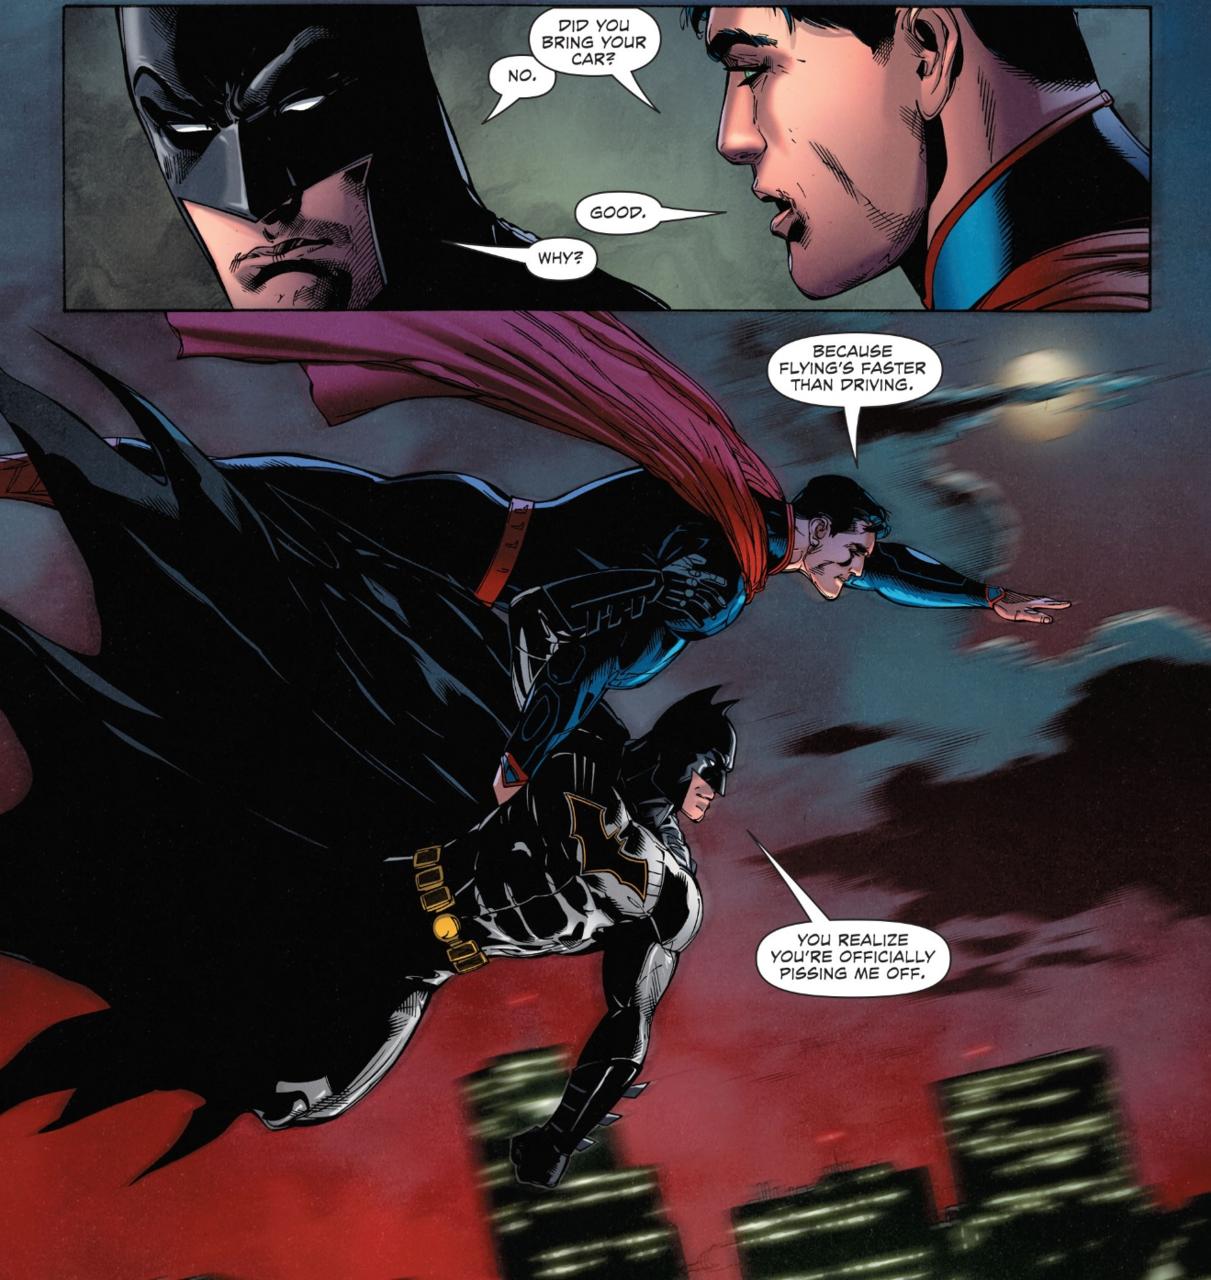 Batman/Superman #31